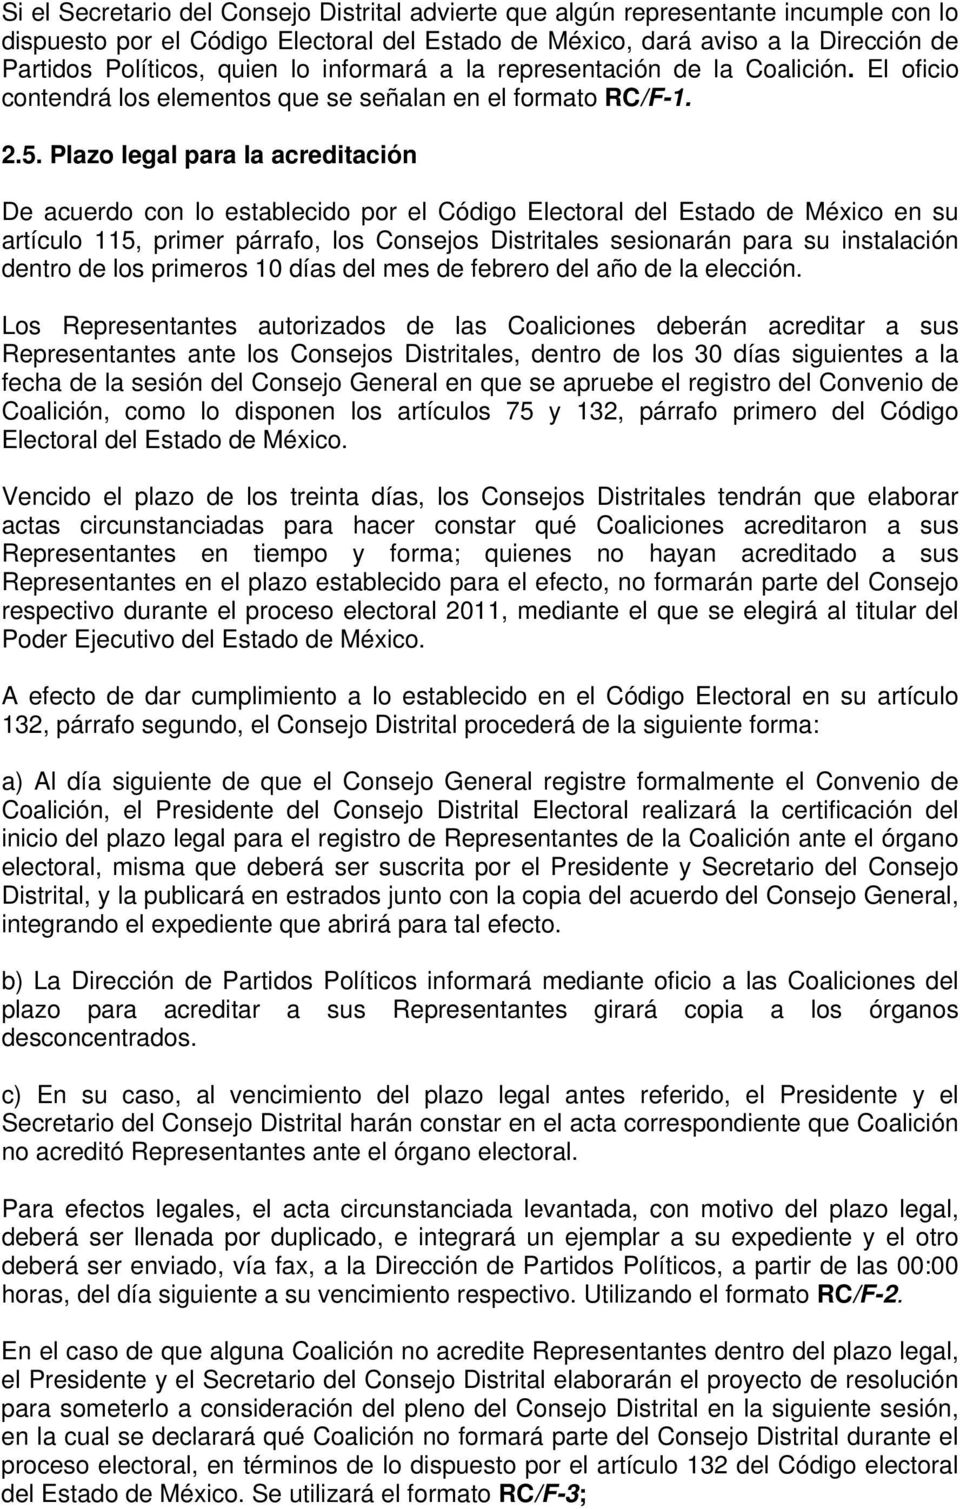 Plazo legal para la acreditación De acuerdo con lo establecido por el Código Electoral del Estado de México en su artículo 115, primer párrafo, los Consejos Distritales sesionarán para su instalación